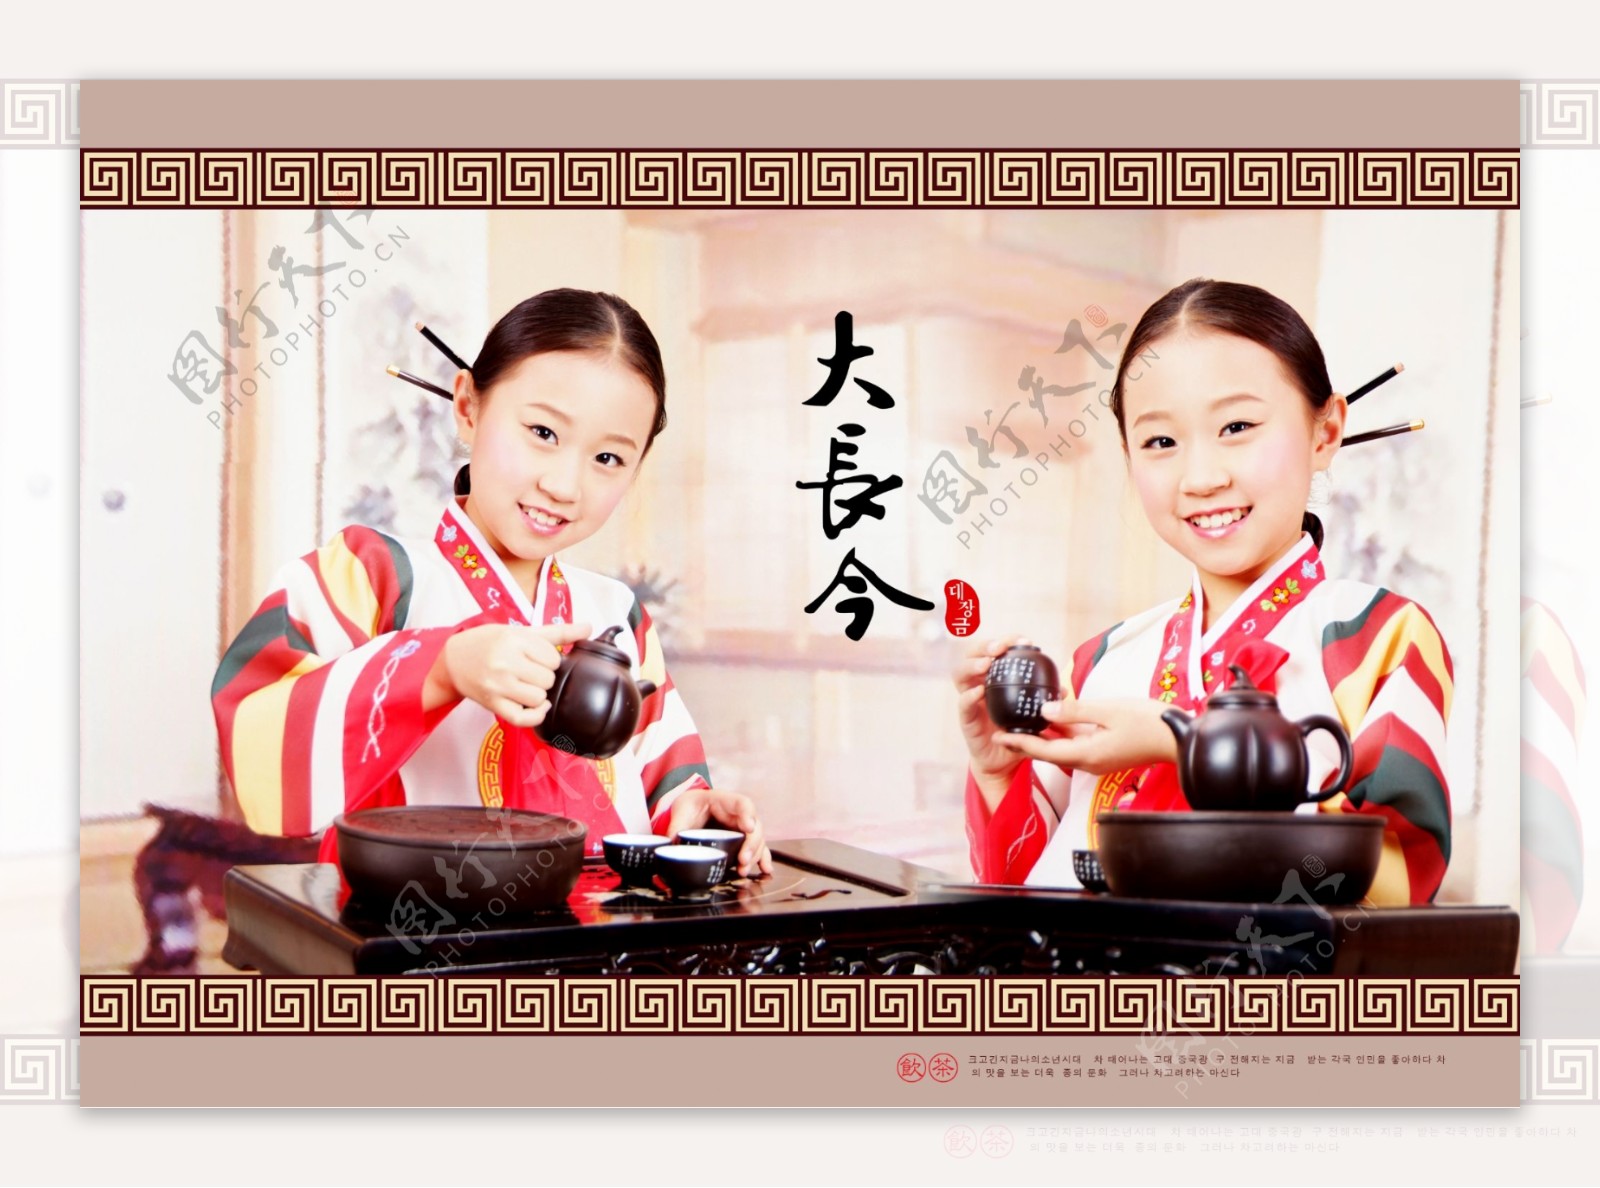 韩国女孩大长今图片素材儿童摄影PSD分层素材儿童相册模板相册模板